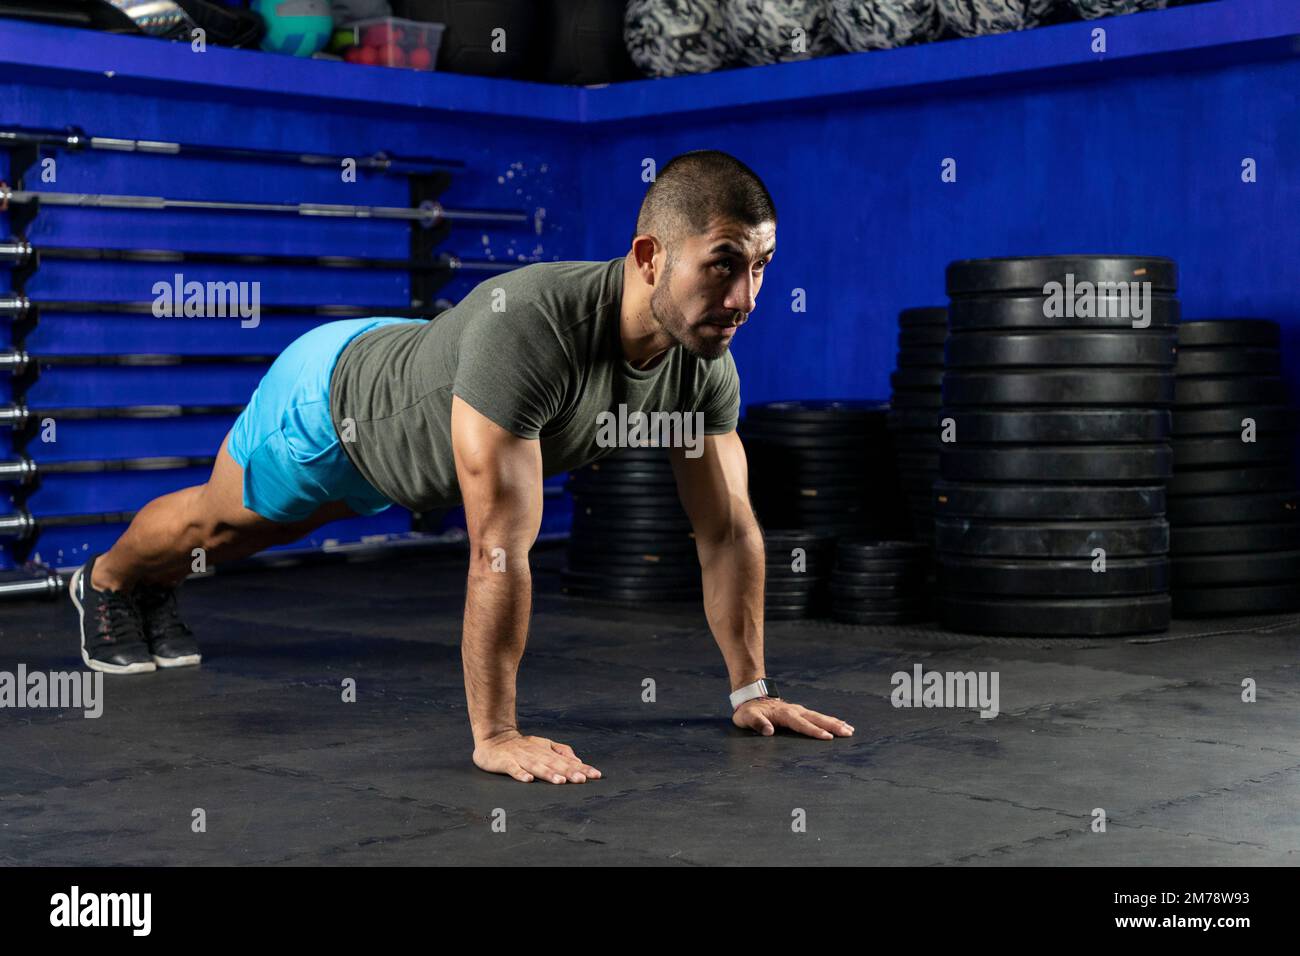 Ein Lateiner mit Sportbekleidung, der in einem Crossfit-Gym eine hohe Planke macht Stockfoto